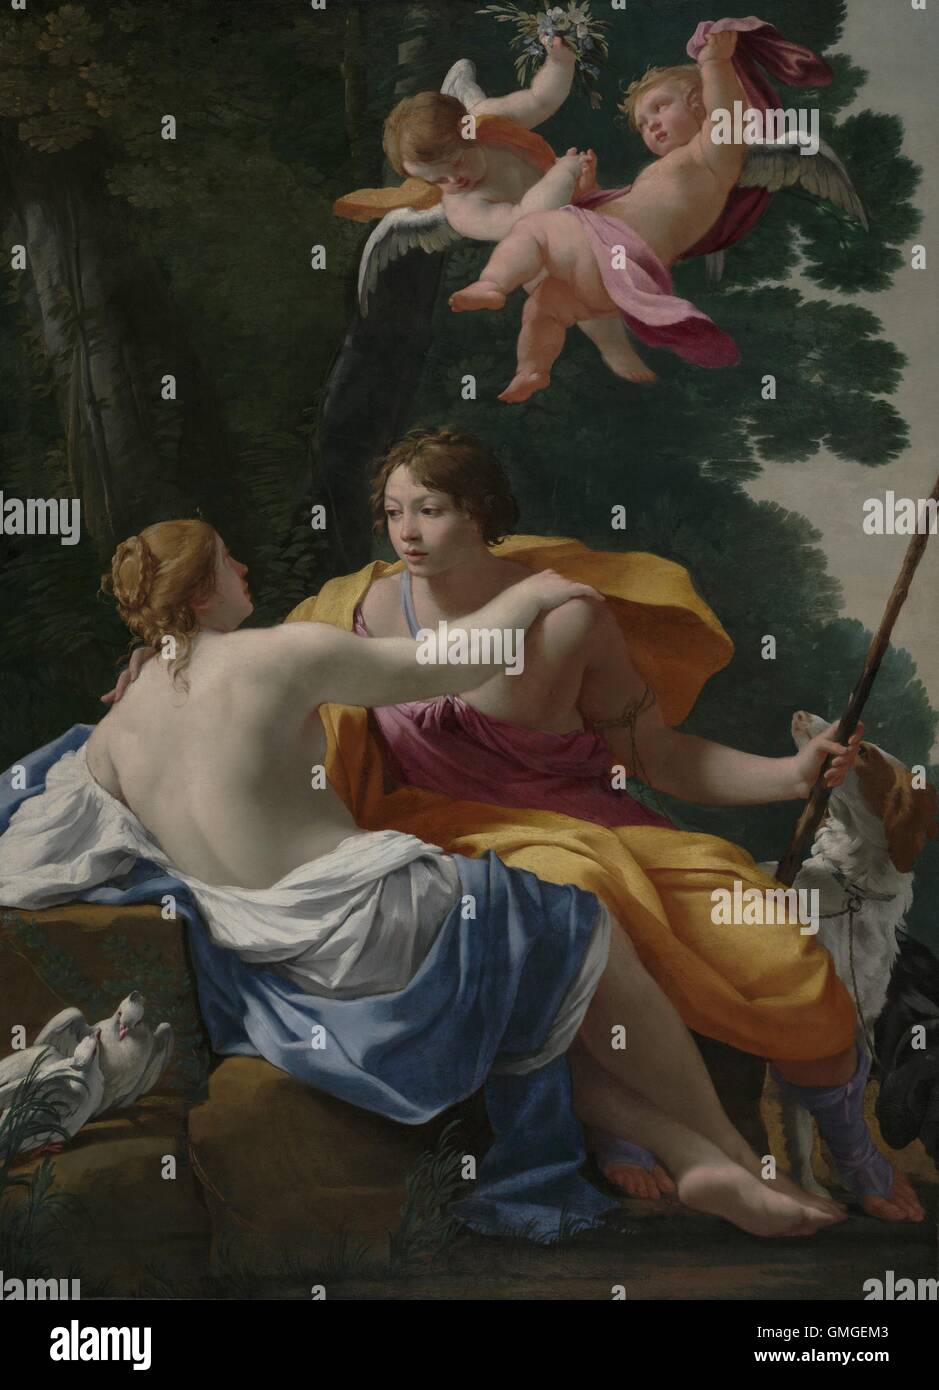 Venus y Adonis, por Simon Vouet, 1642, pintura francesa, óleo sobre lienzo. Venus, la diosa del amor, atrae a su amante mortal renuente, Adonis, que esté listo para volver a la caza (BSLOC 2016 6 201) Foto de stock